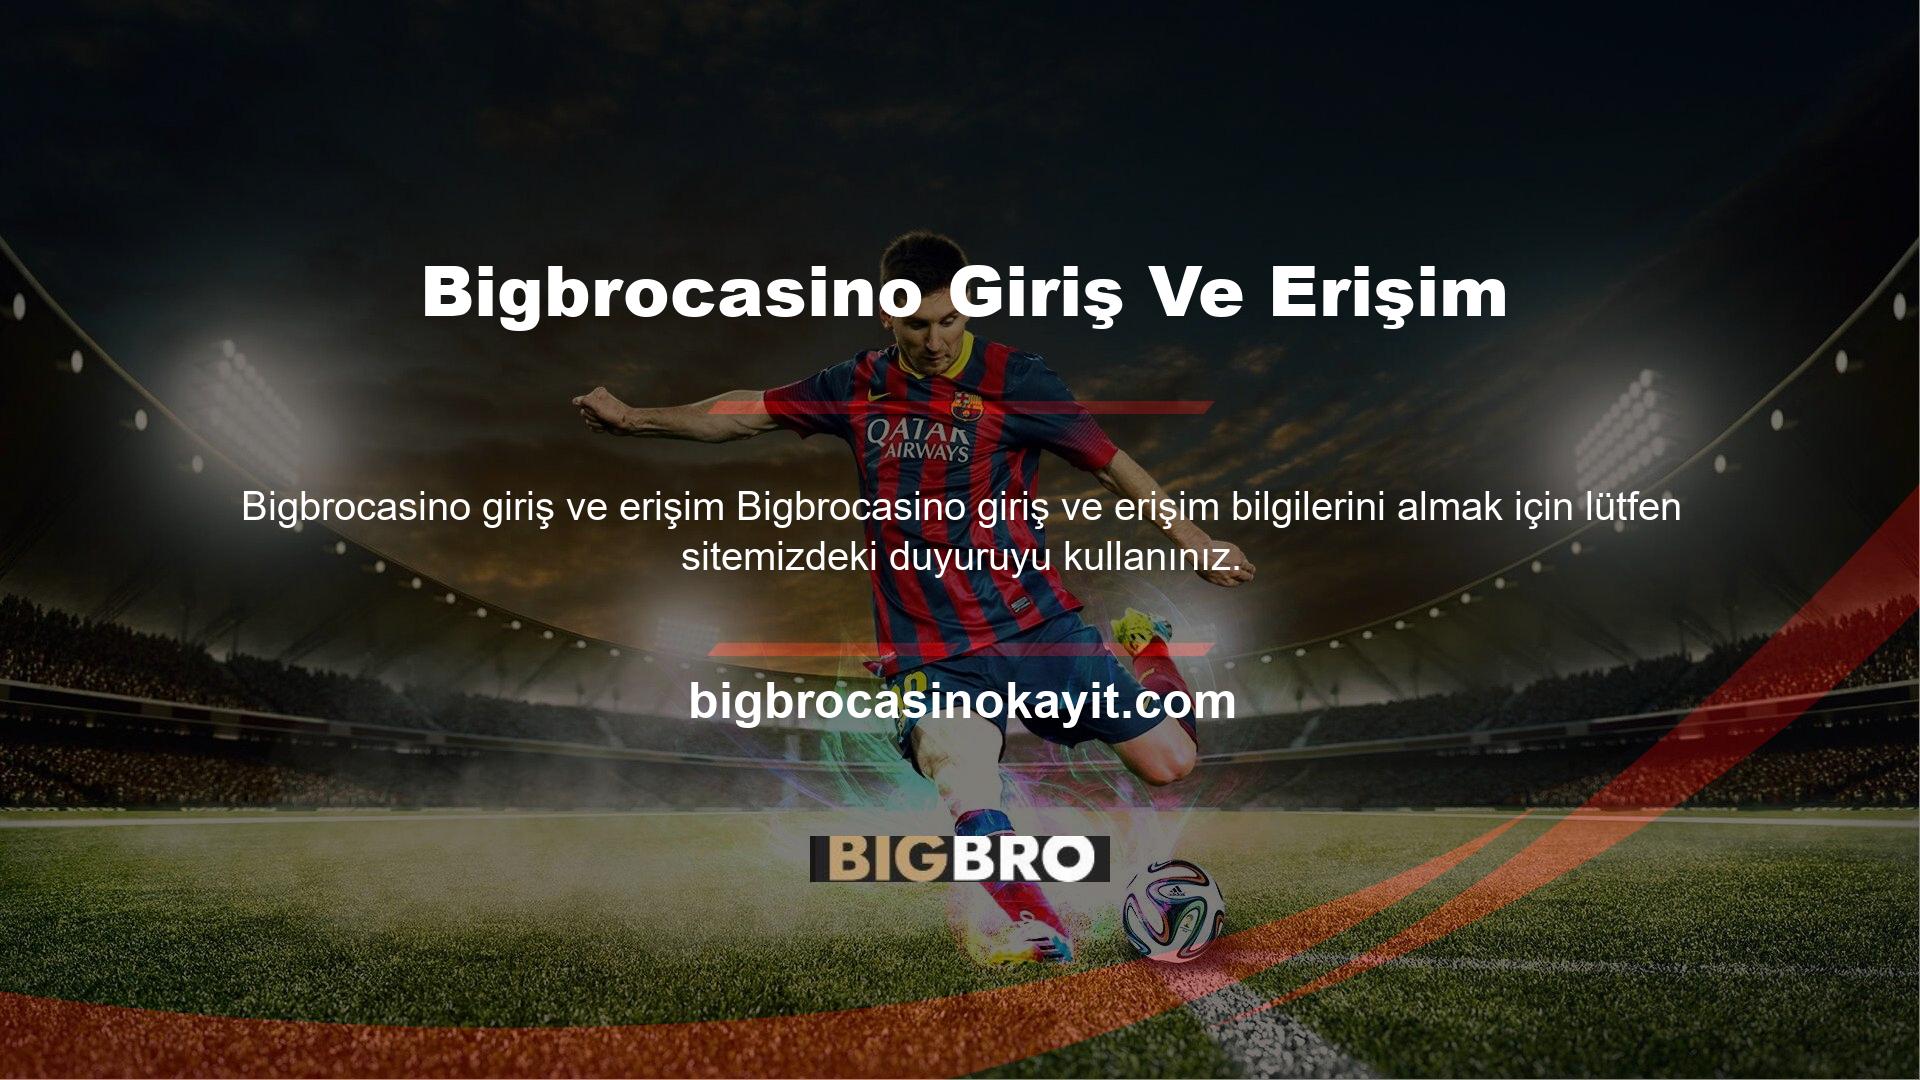 Bigbrocasino web sitemizde, Bigbrocasino ana spor web sitesine giriş URL'sini bulabilirsiniz